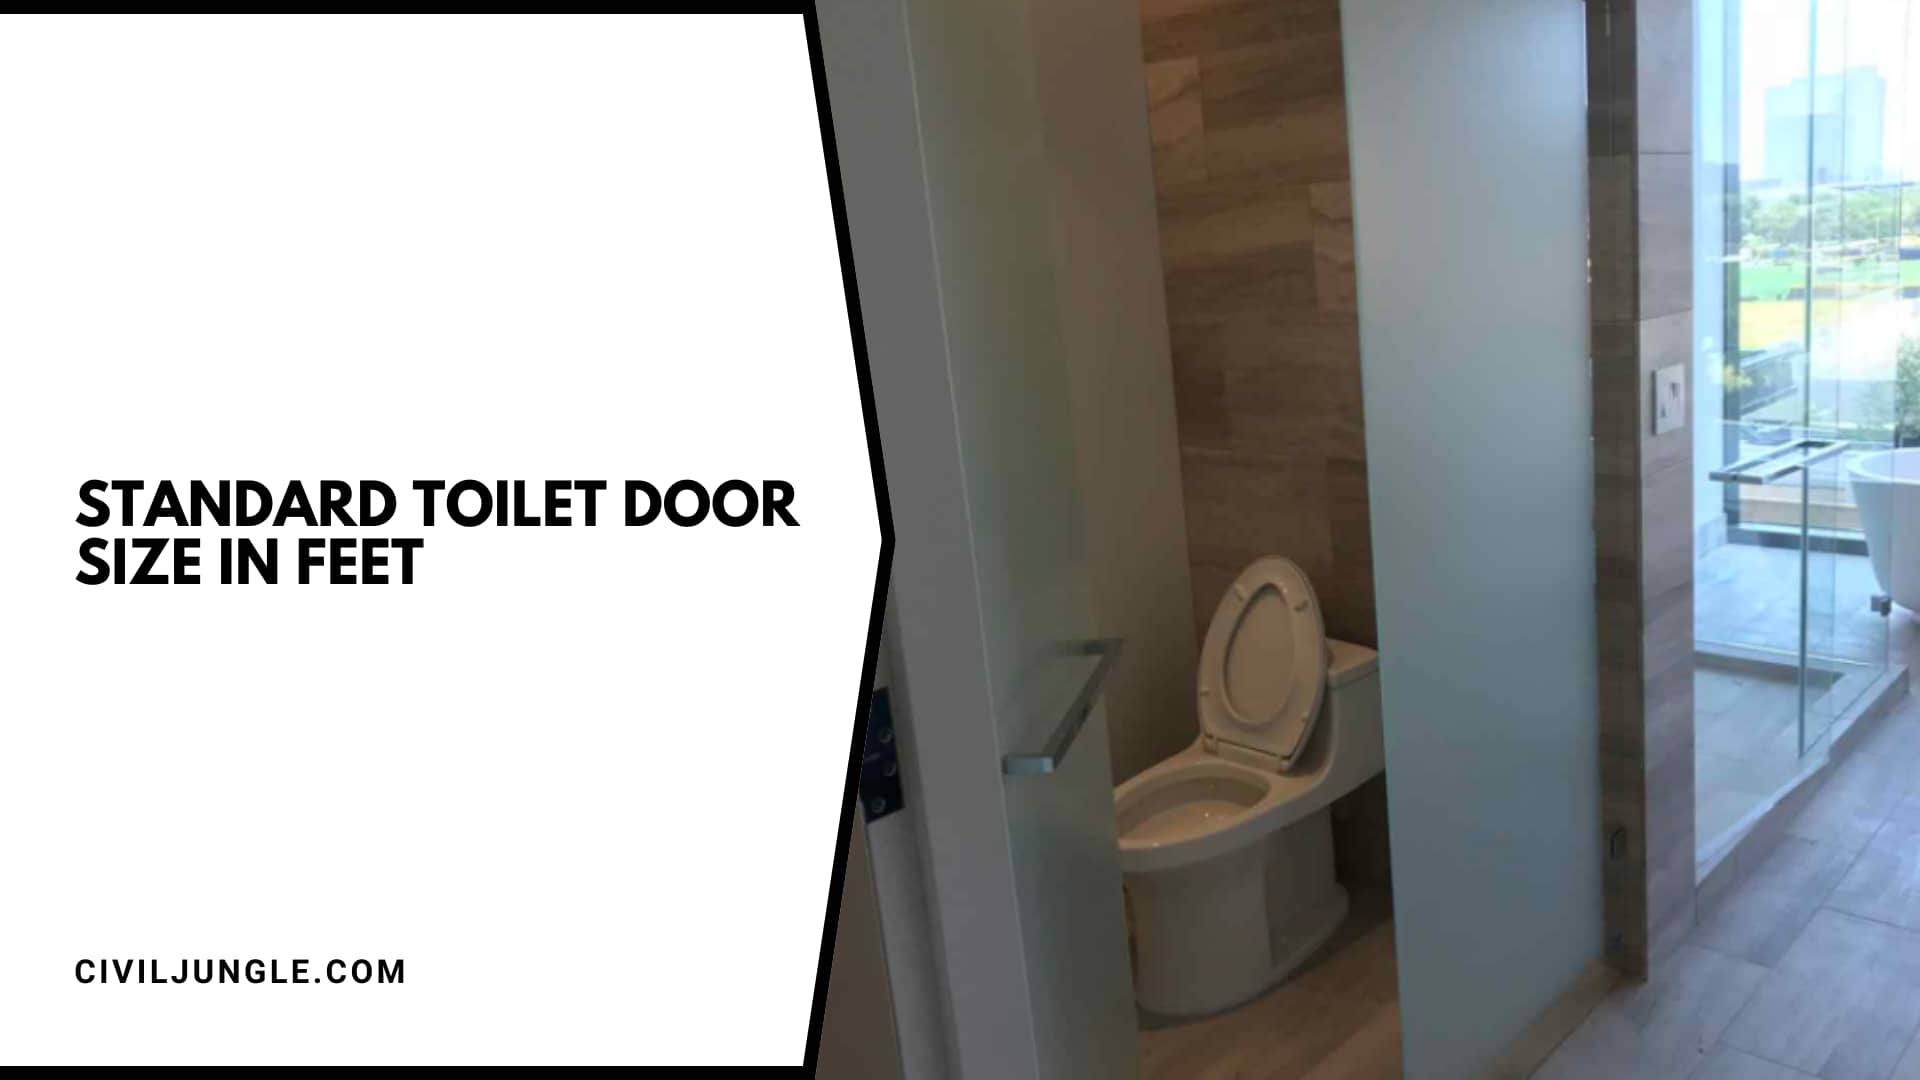 Standard Toilet Door Size in Feet